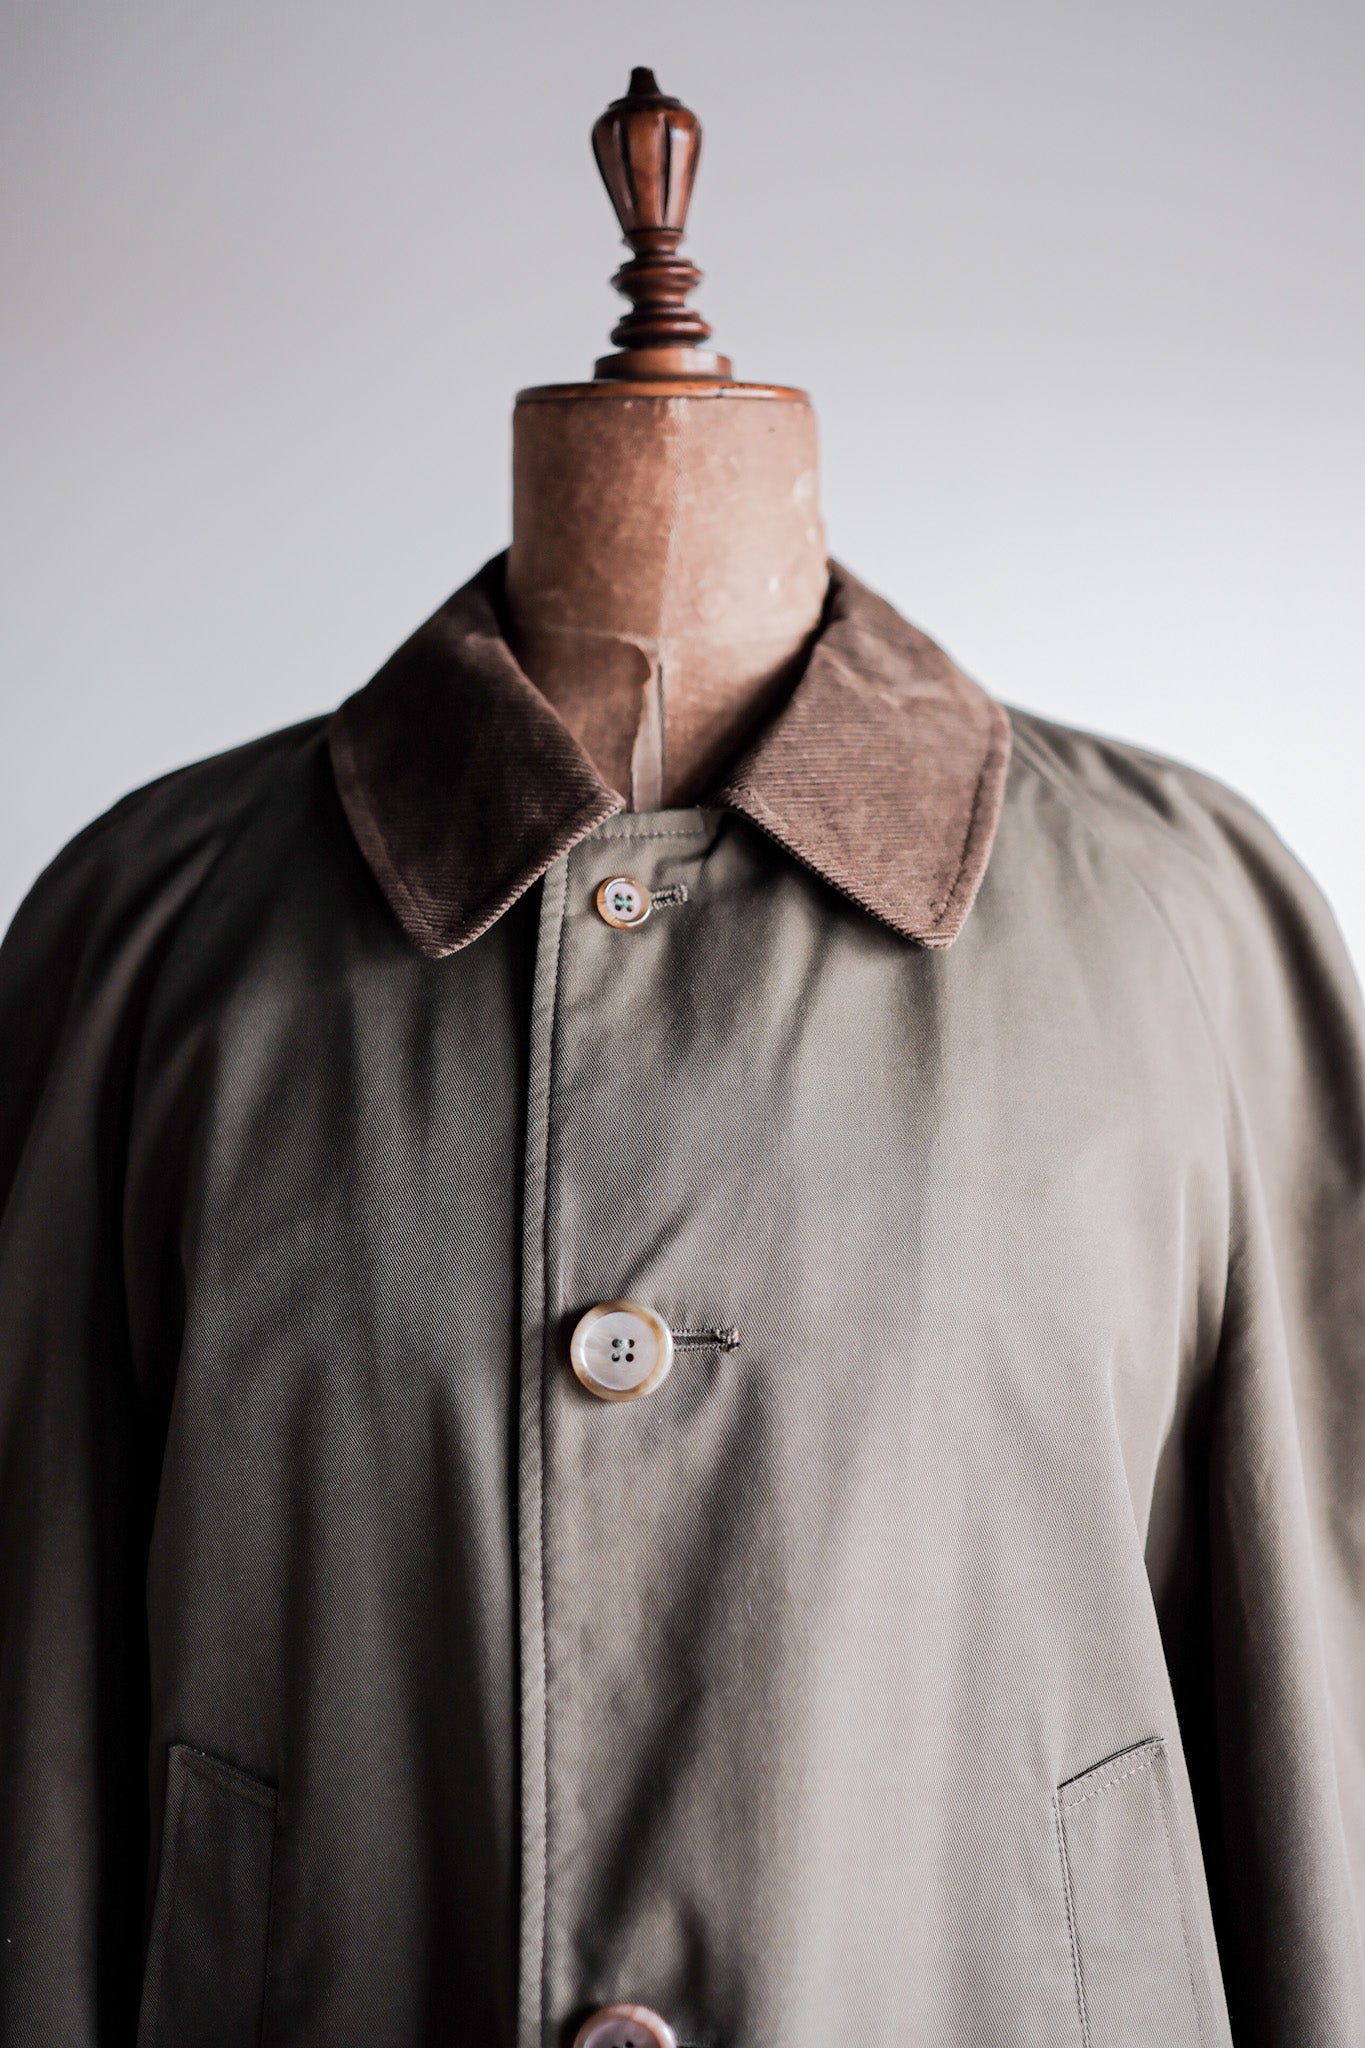 【~80’s】Vintage Grenfell Outdoor Half Coat Size.40